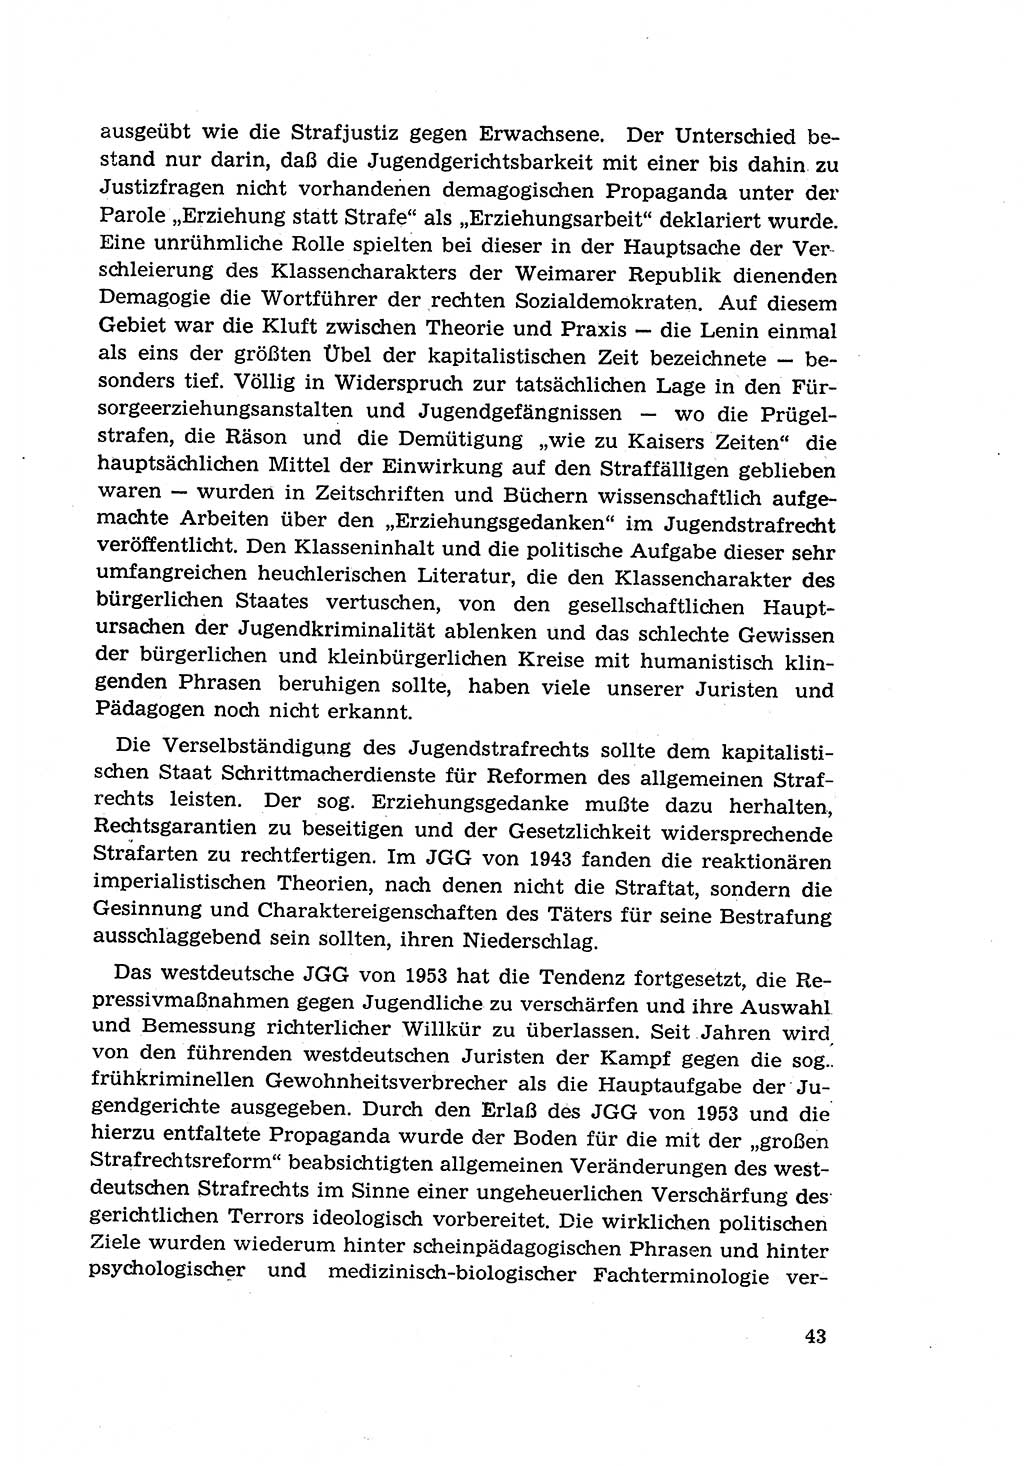 Zur Entwicklung des sozialistischen Strafrechts der Deutschen Demokratischen Republik (DDR) 1960, Seite 43 (Entw. soz. Strafr. DDR 1960, S. 43)